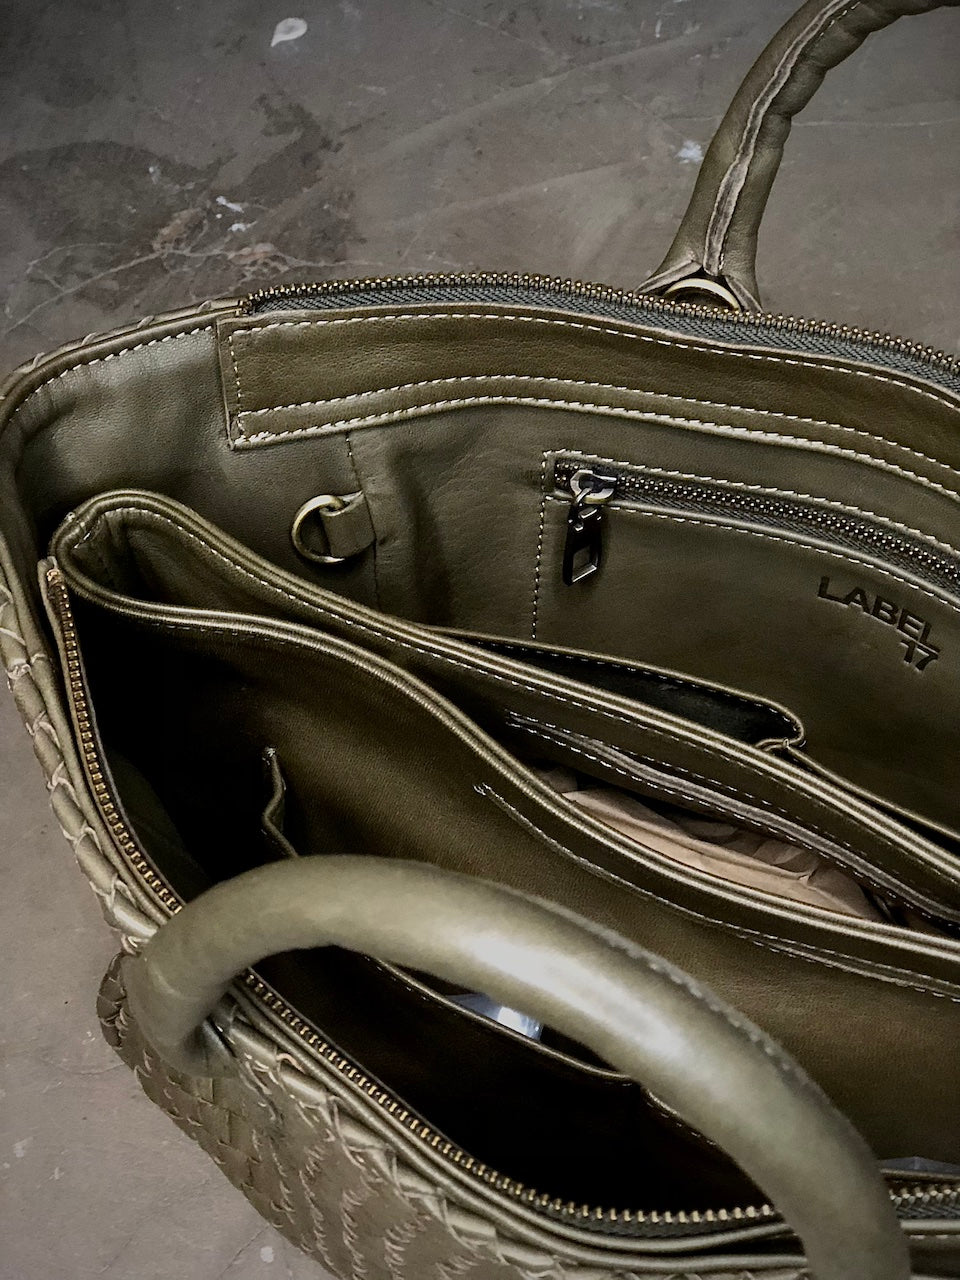 Die Handbag Cabas Medium von LABEL17 ist eine leichte Handtasche aus geschmeidigem, pflanzlich gegerbtem Nappaleder. Die von Hand geflochtene Tasche hat einen Reissverschluss und abnehmbaren Schulterriemen und ist innen mit Leder und einer verschliessbaren Innentasche ausgestattet.